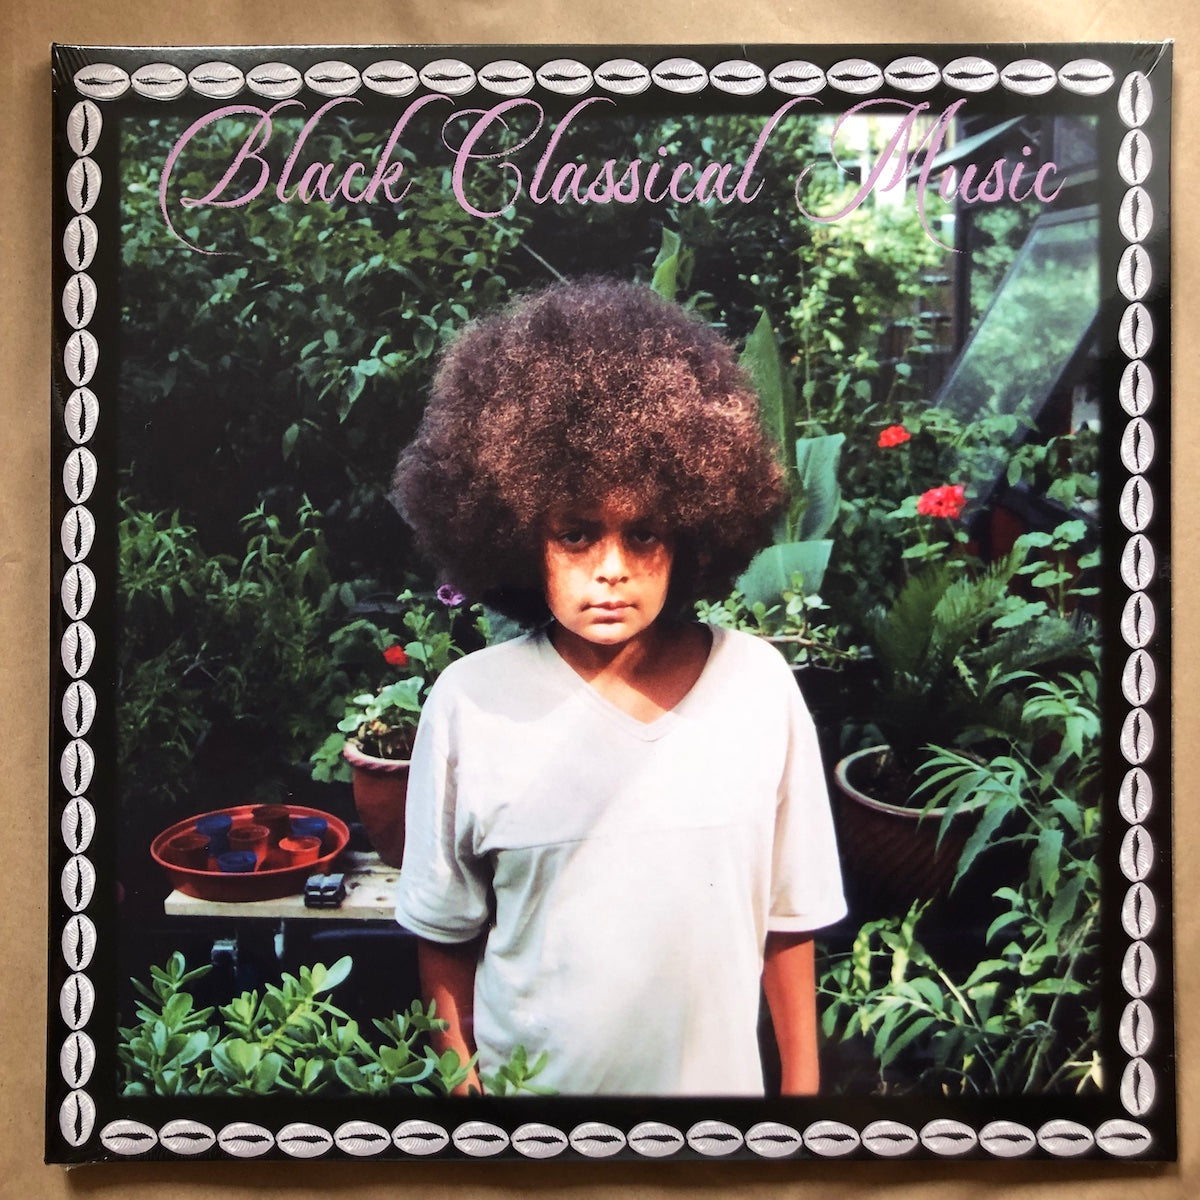 Black Classical Music: Double Vinyl LP